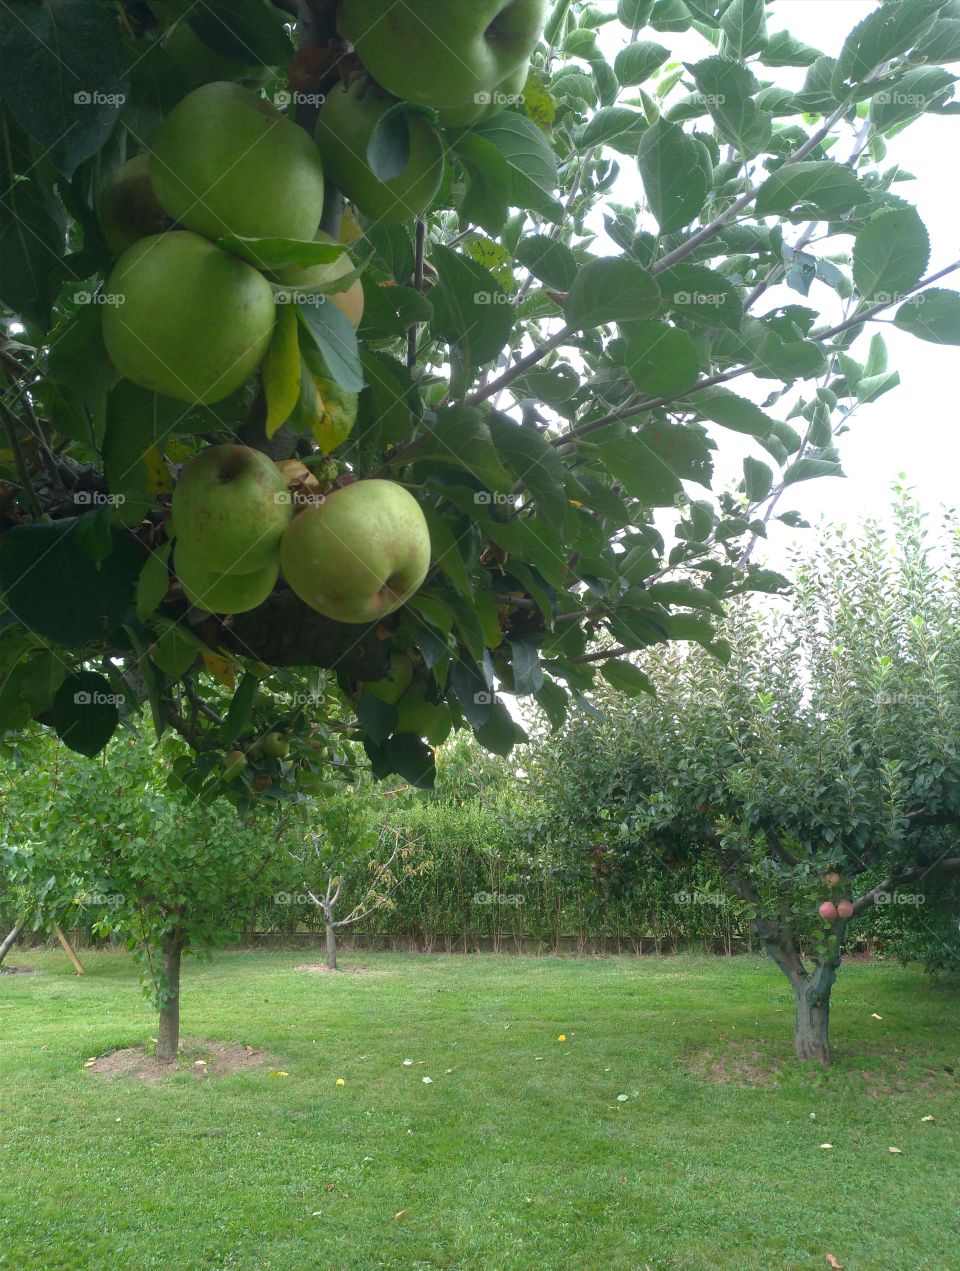 Manzanas verdes en el árbol de una huerta